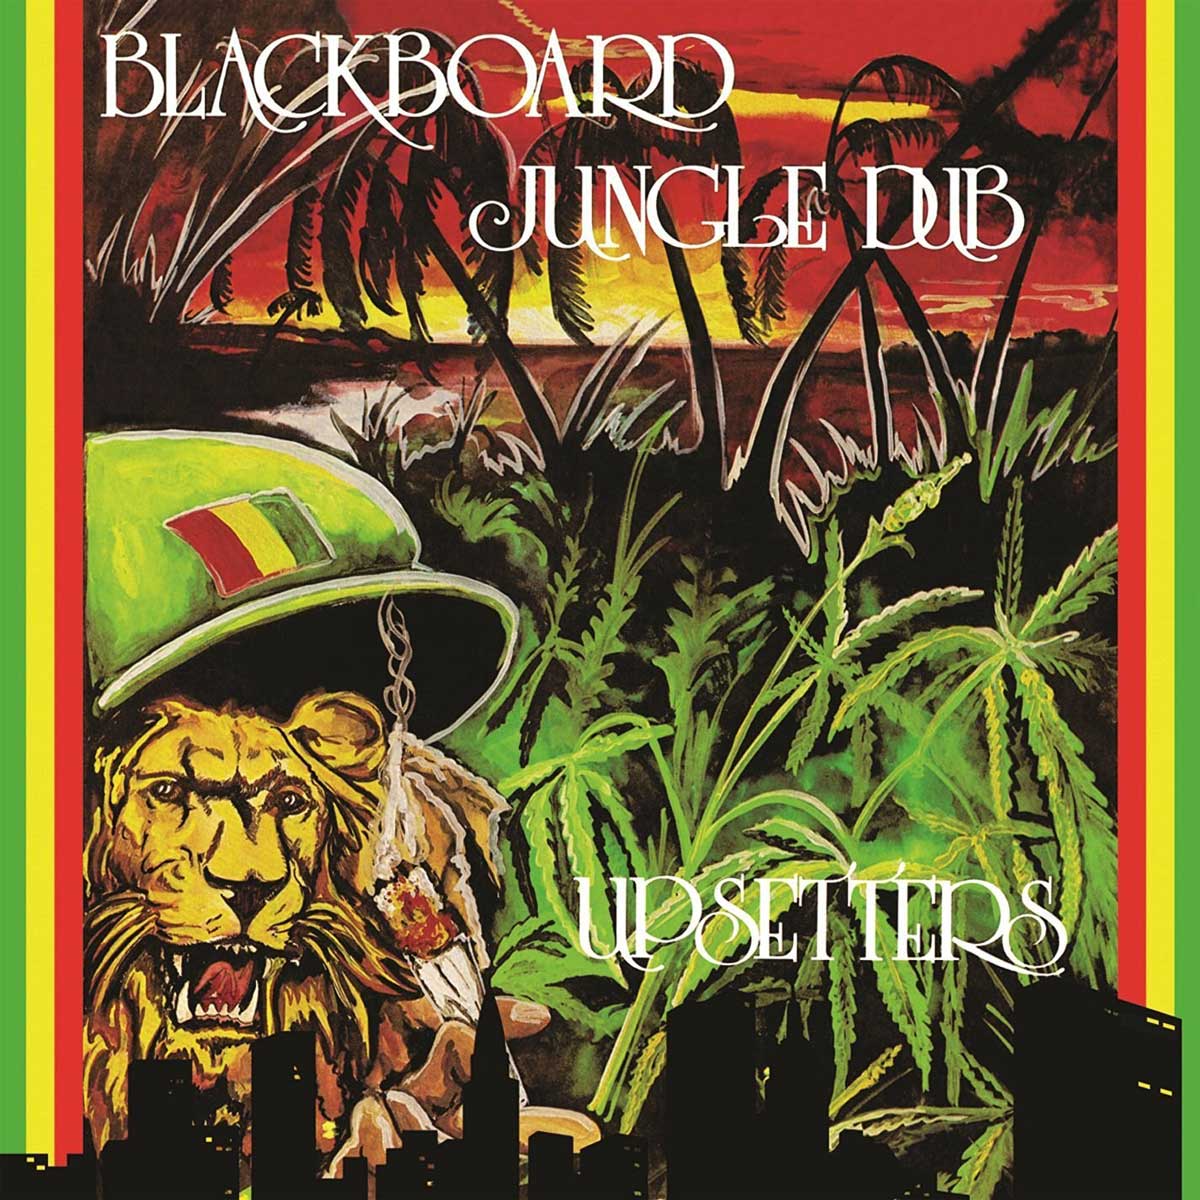 Vinile Upsetters (The) - Blackboard Jungle Dub NUOVO SIGILLATO, EDIZIONE DEL 31/08/2016 SUBITO DISPONIBILE